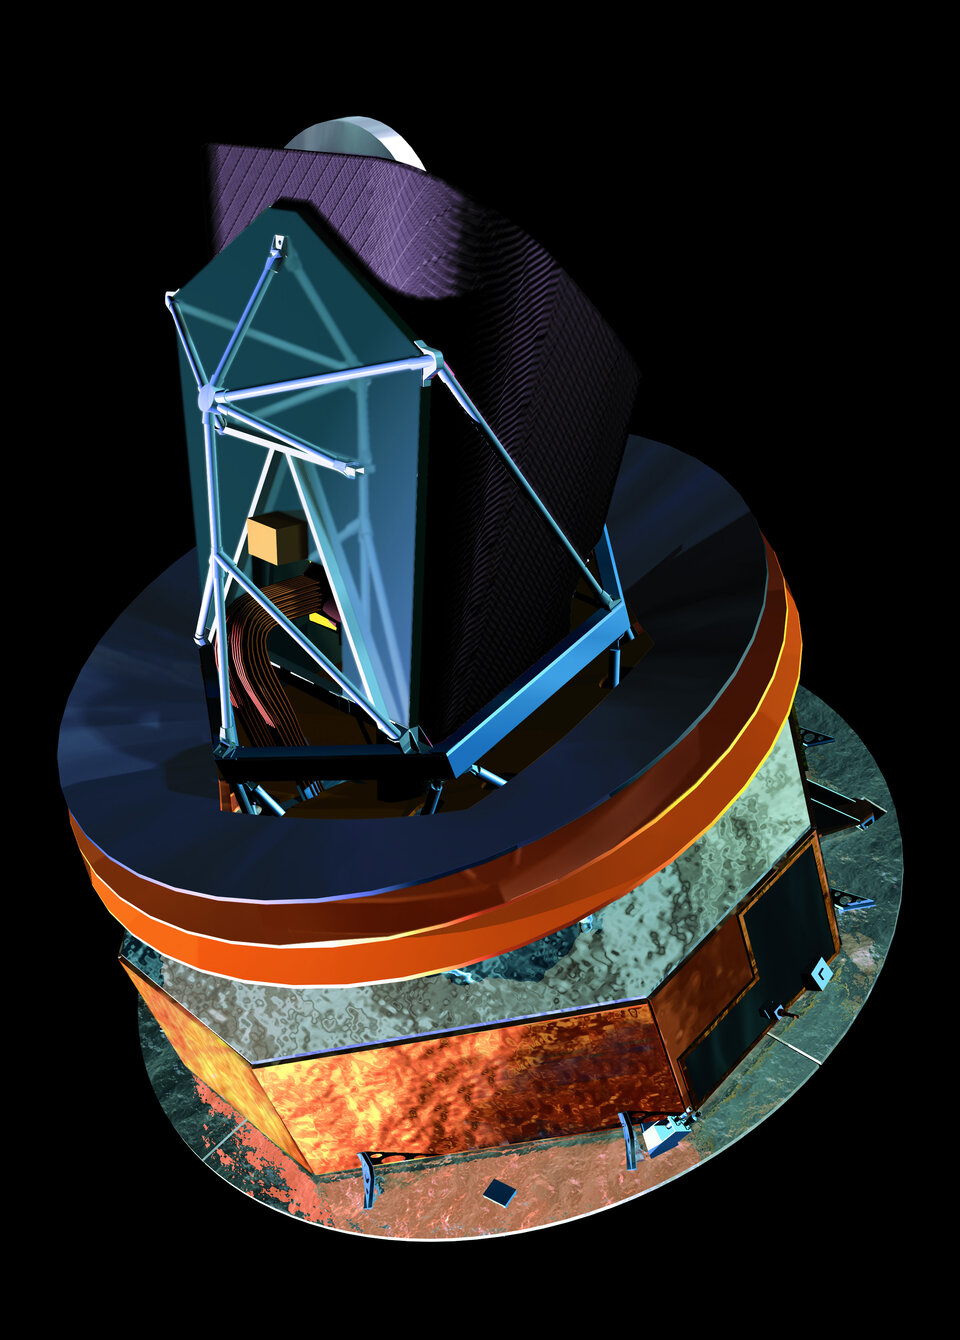 Med otrolig precision ska Darwin-teleskopen formationsflyga och fungera som delar i ett enormt rymdteleskop